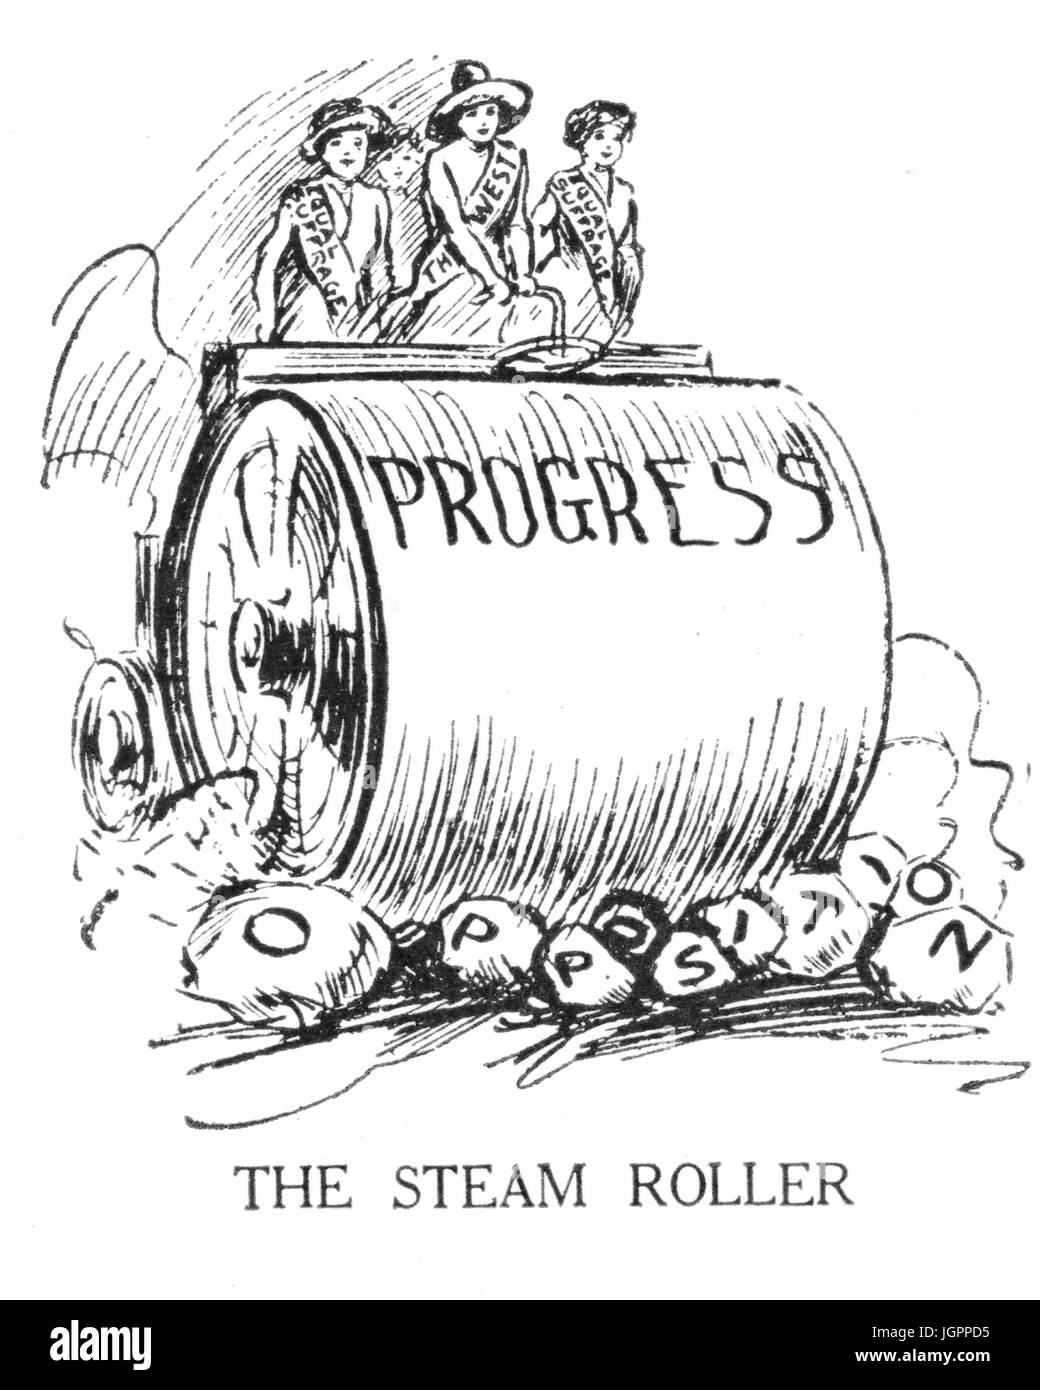 Le rouleau à vapeur suffragettes américaines sur une machine à vapeur d'écraser l'opposition dans un dessin animé de 'juger' magazine en mars 1917 Banque D'Images